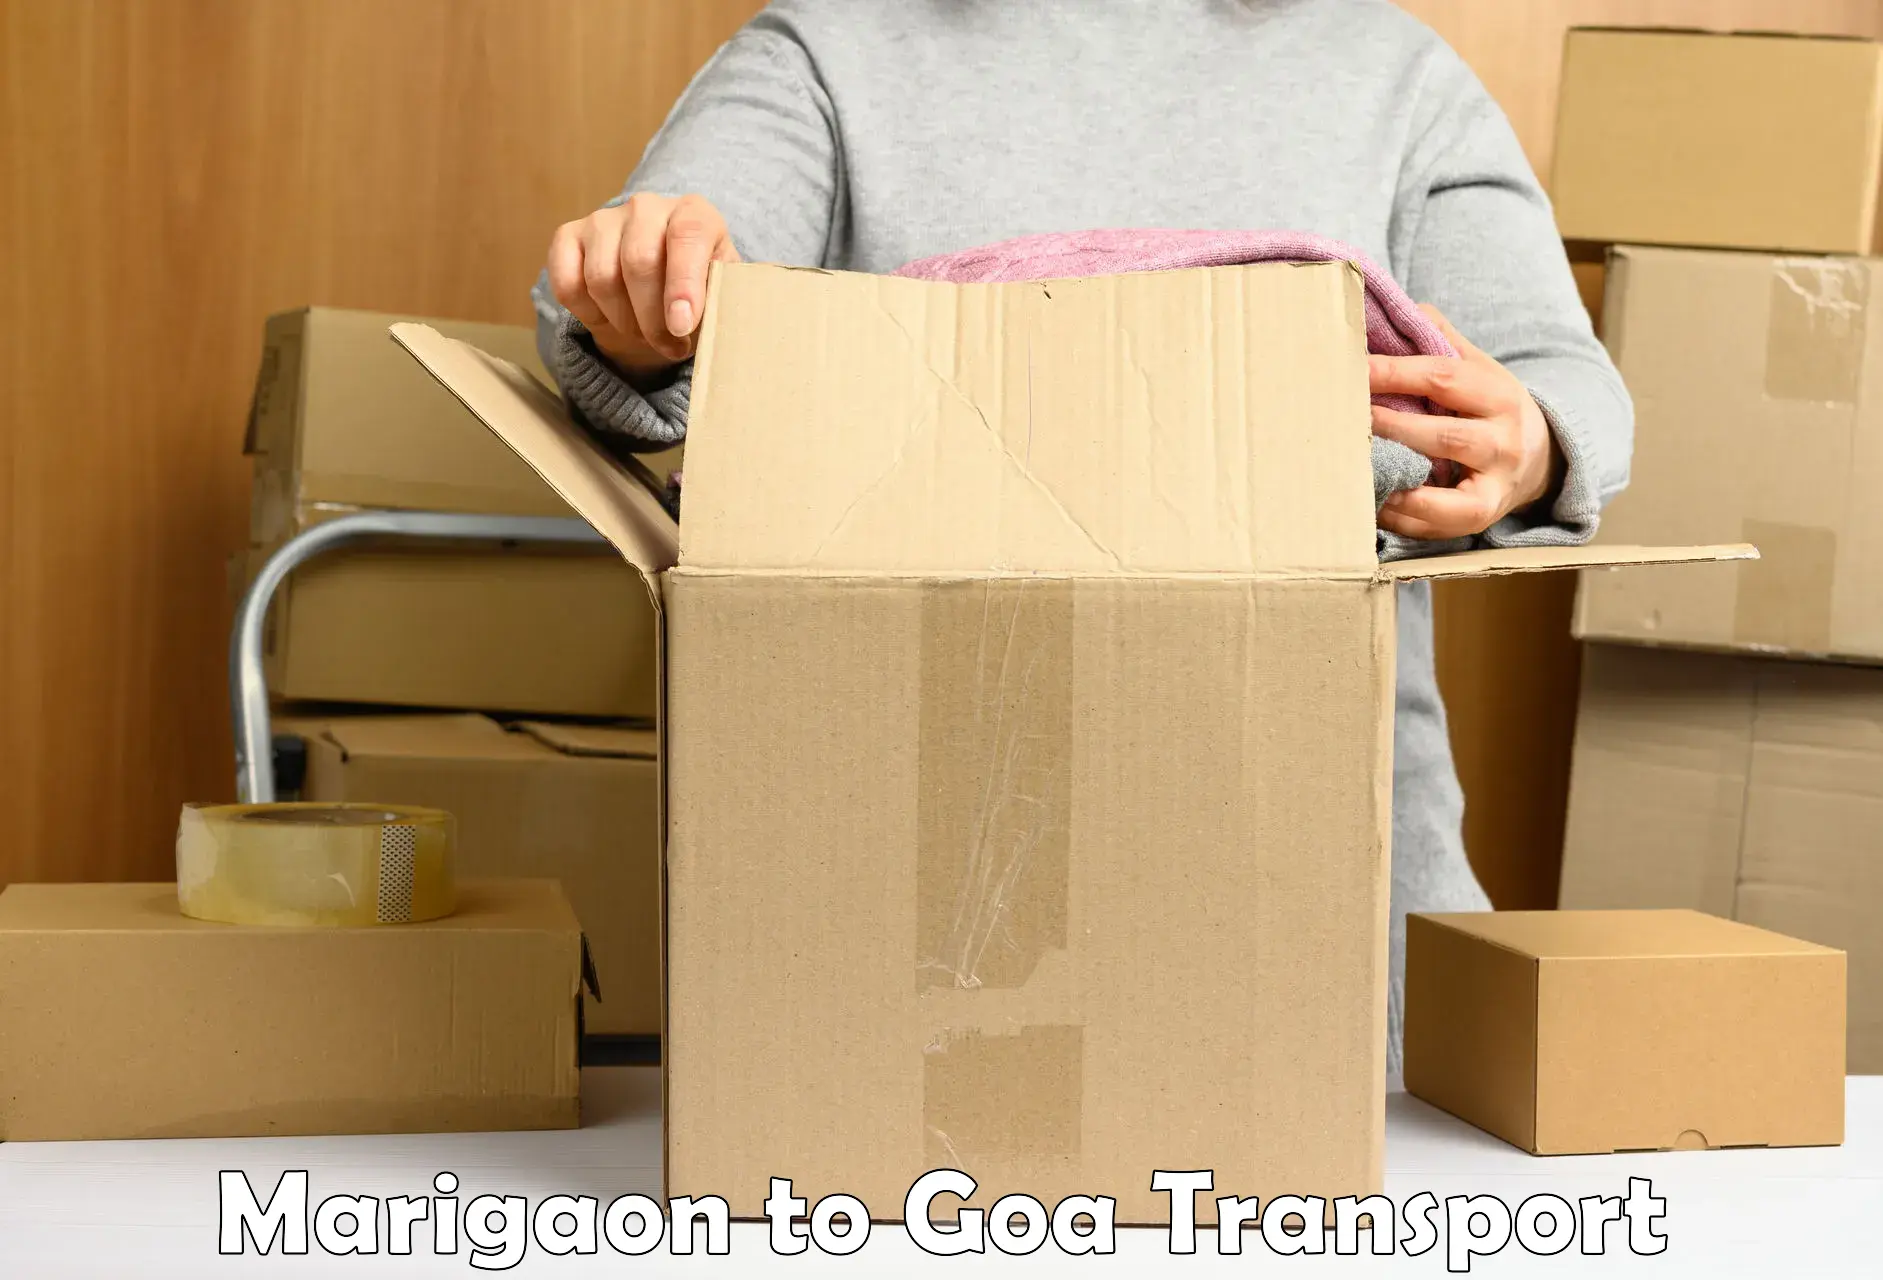 Intercity transport Marigaon to Goa